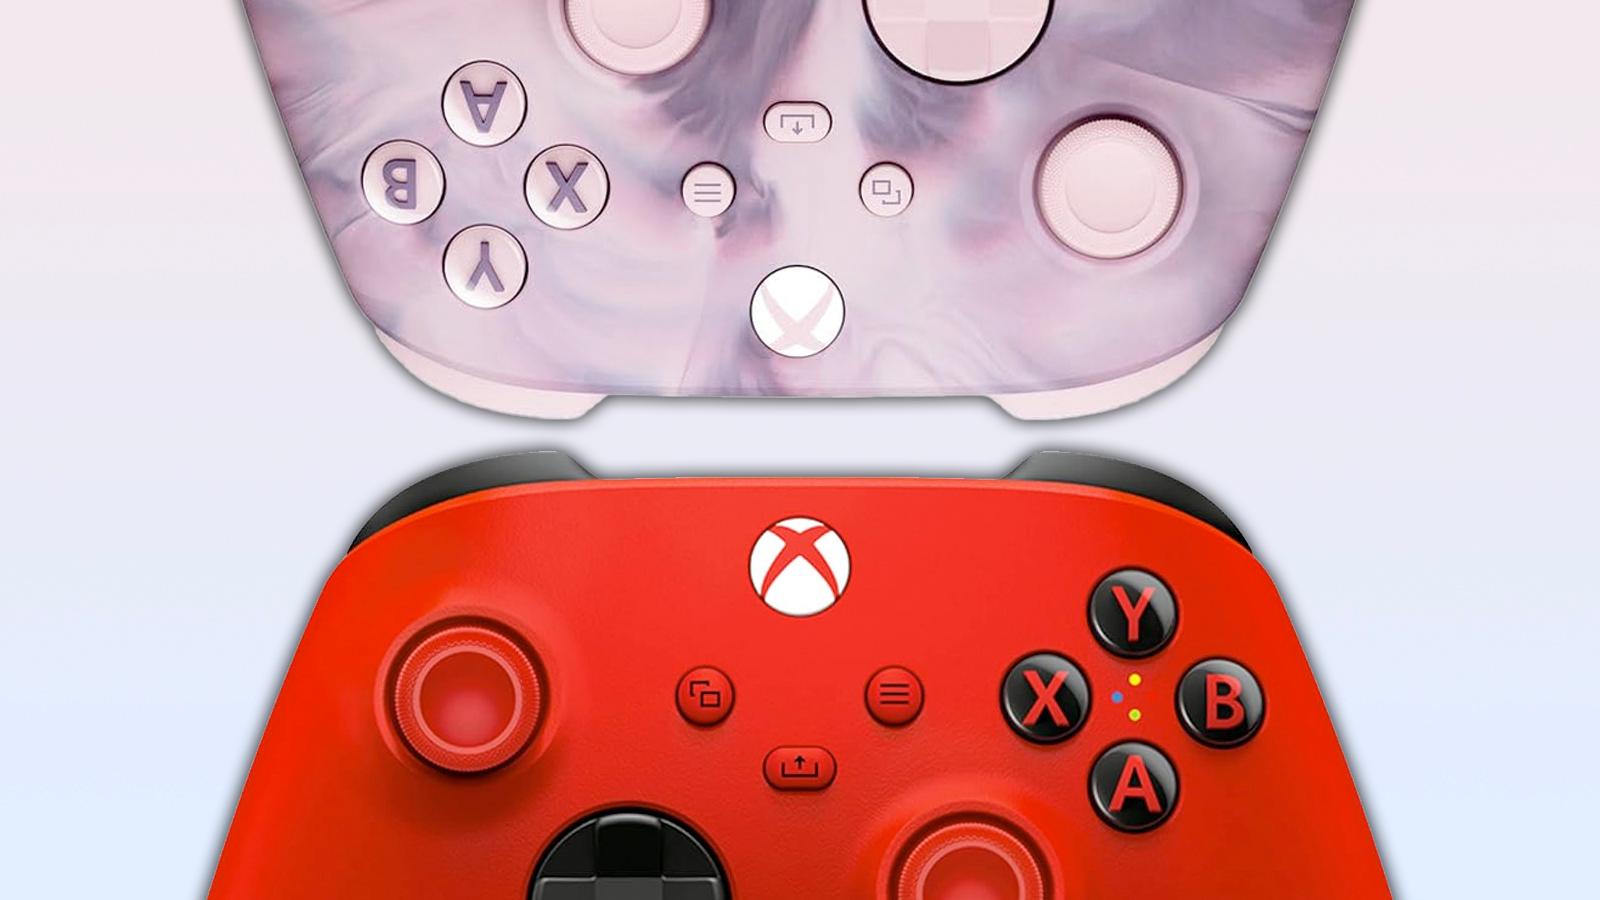 xbox red controller and xbox dream vapor controller